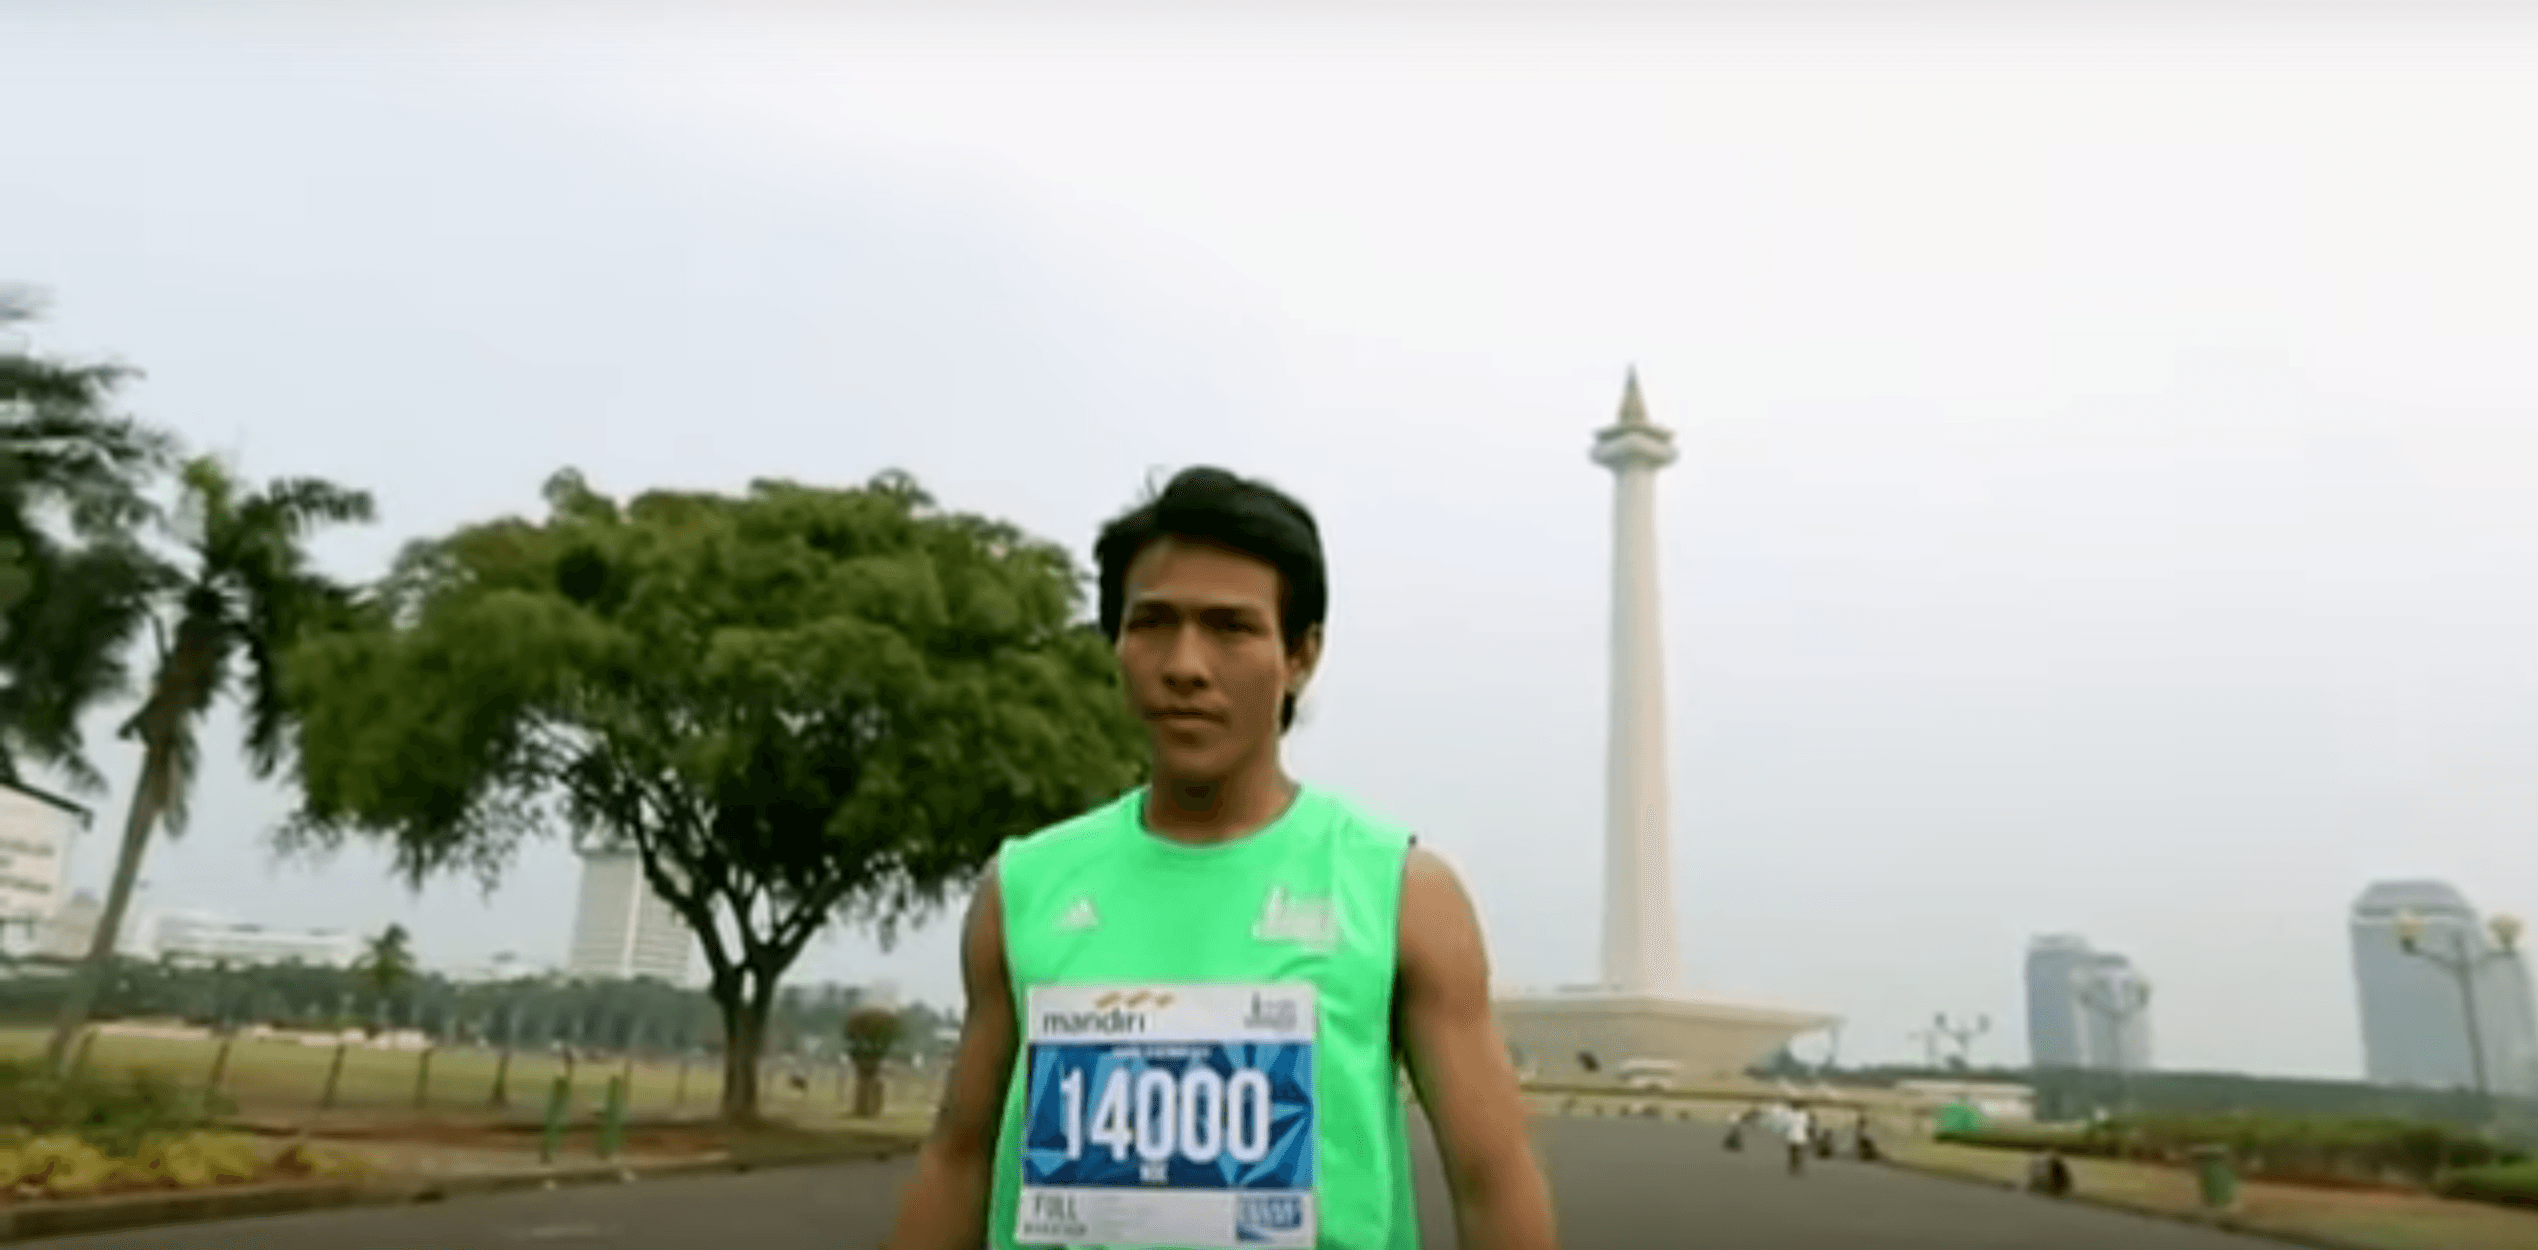 Siap berlari di Jakarta Marathon 2015 pada hari Minggu?